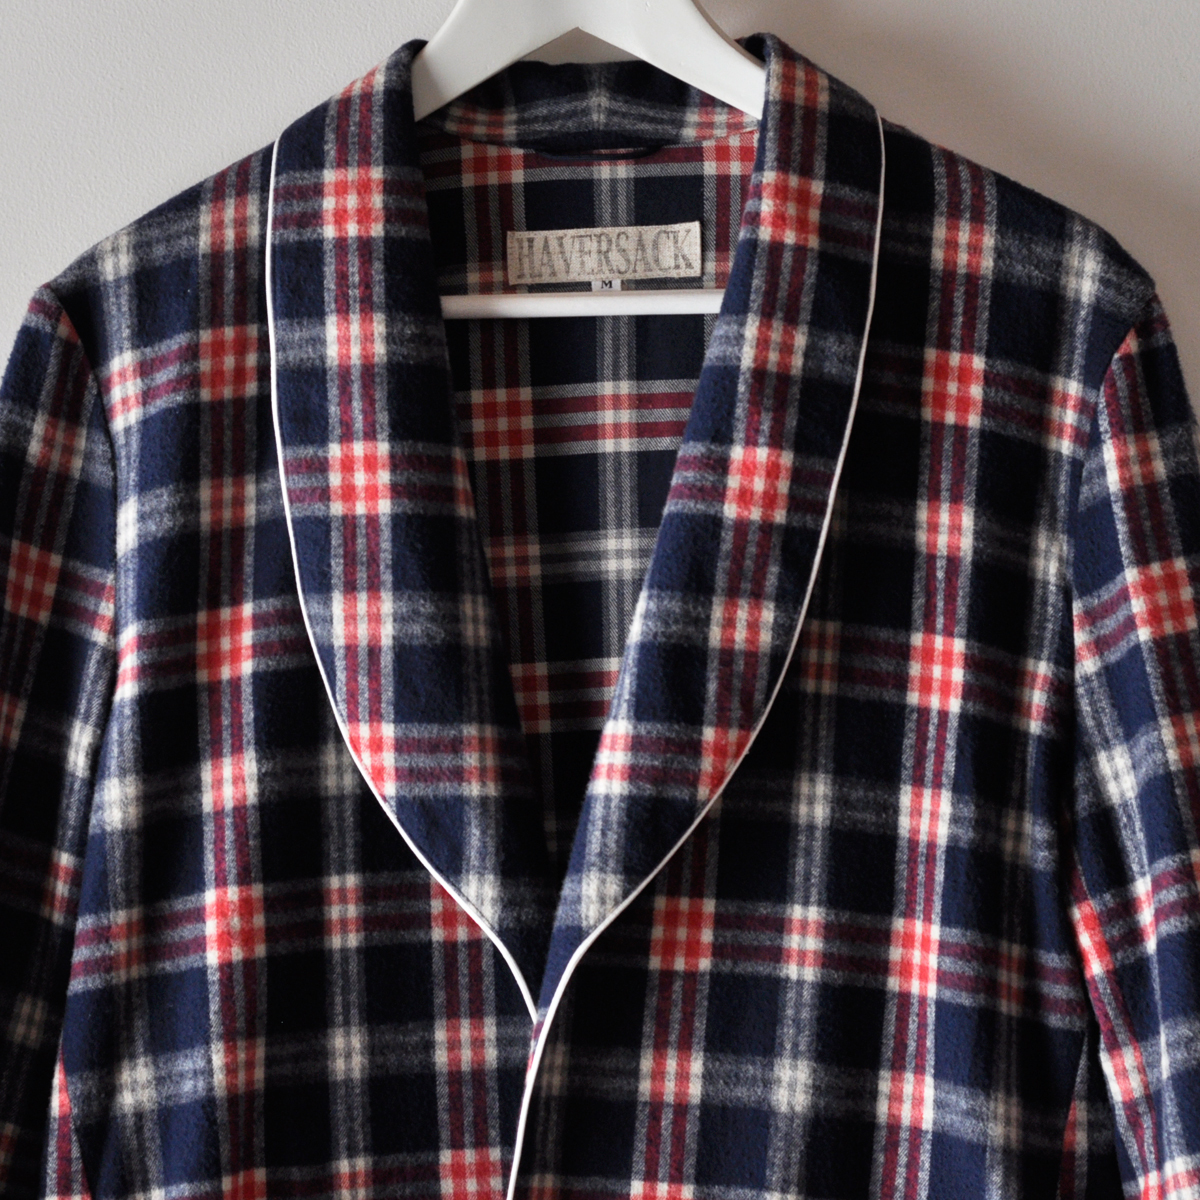  прекрасный товар HAVERSACK шаль цвет выполненный в строгом стиле рубашка жакет проверка хлопок фланель Night свободная домашняя одежда M сделано в Японии - basa-k